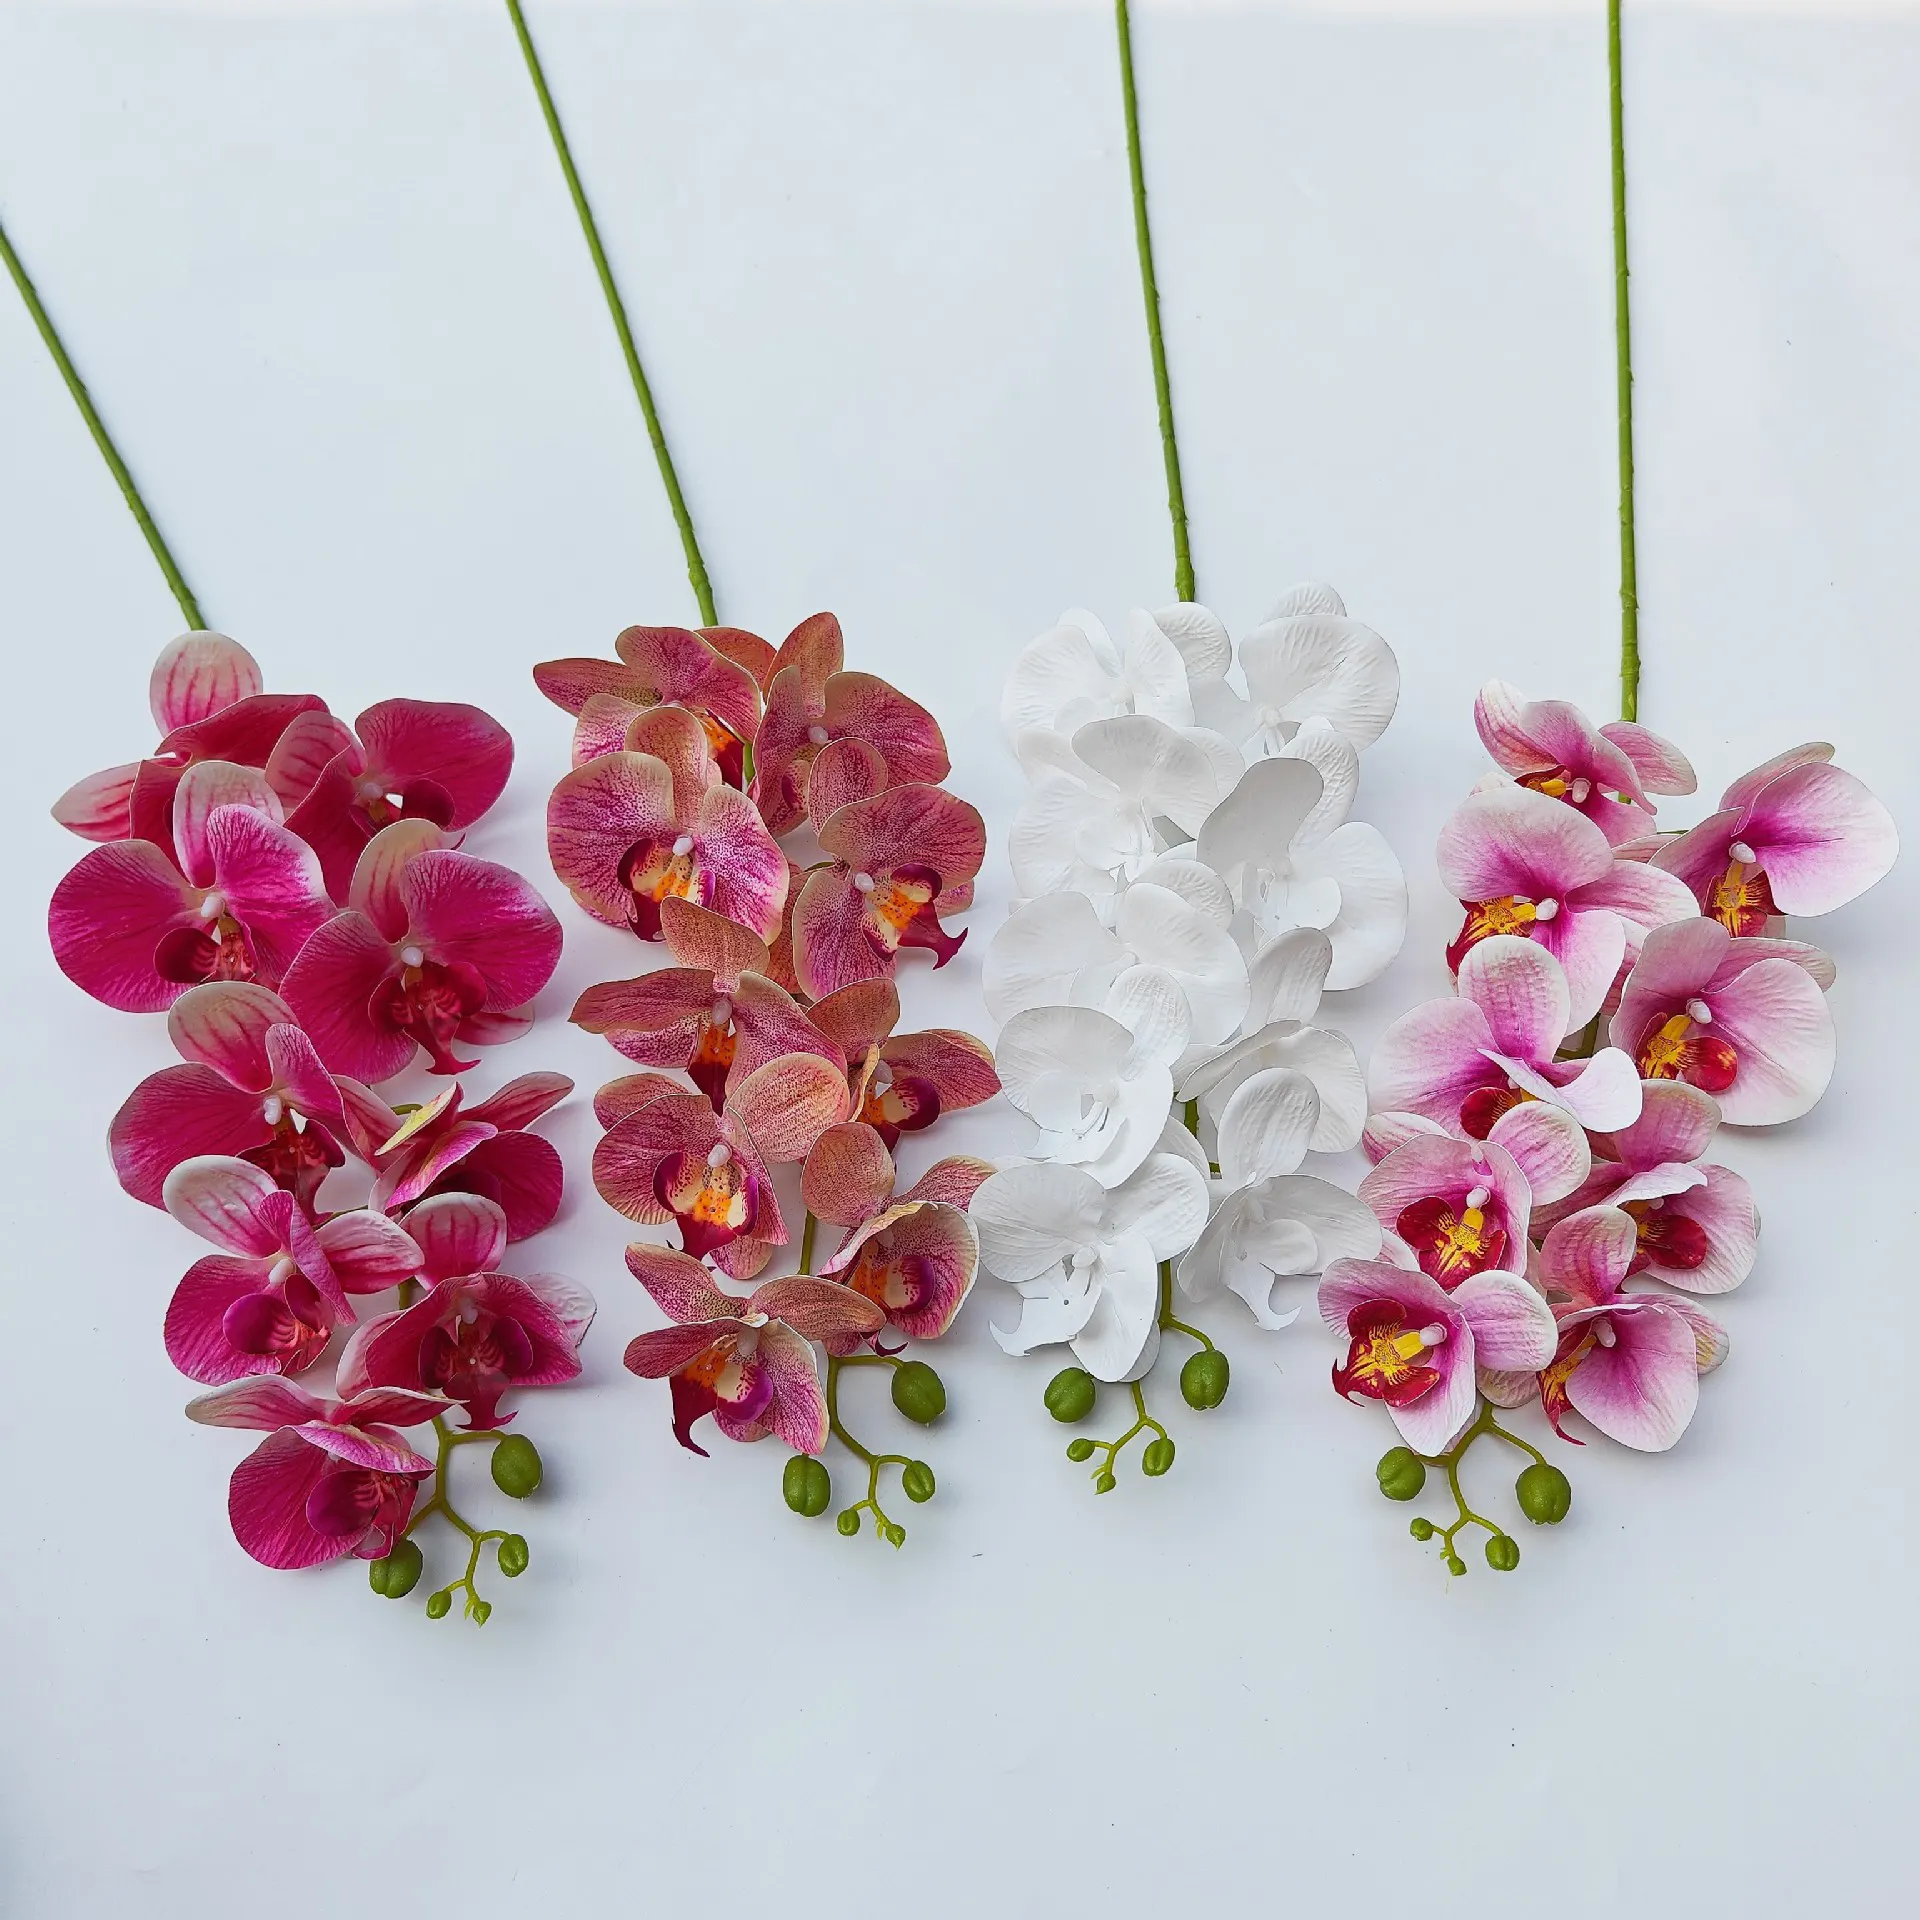 Grandes Flores Artificiais Orquídeas Real Sentir Phalaenopsis Flores em Massa para Casamento Festa Festiva Home Office Decoração